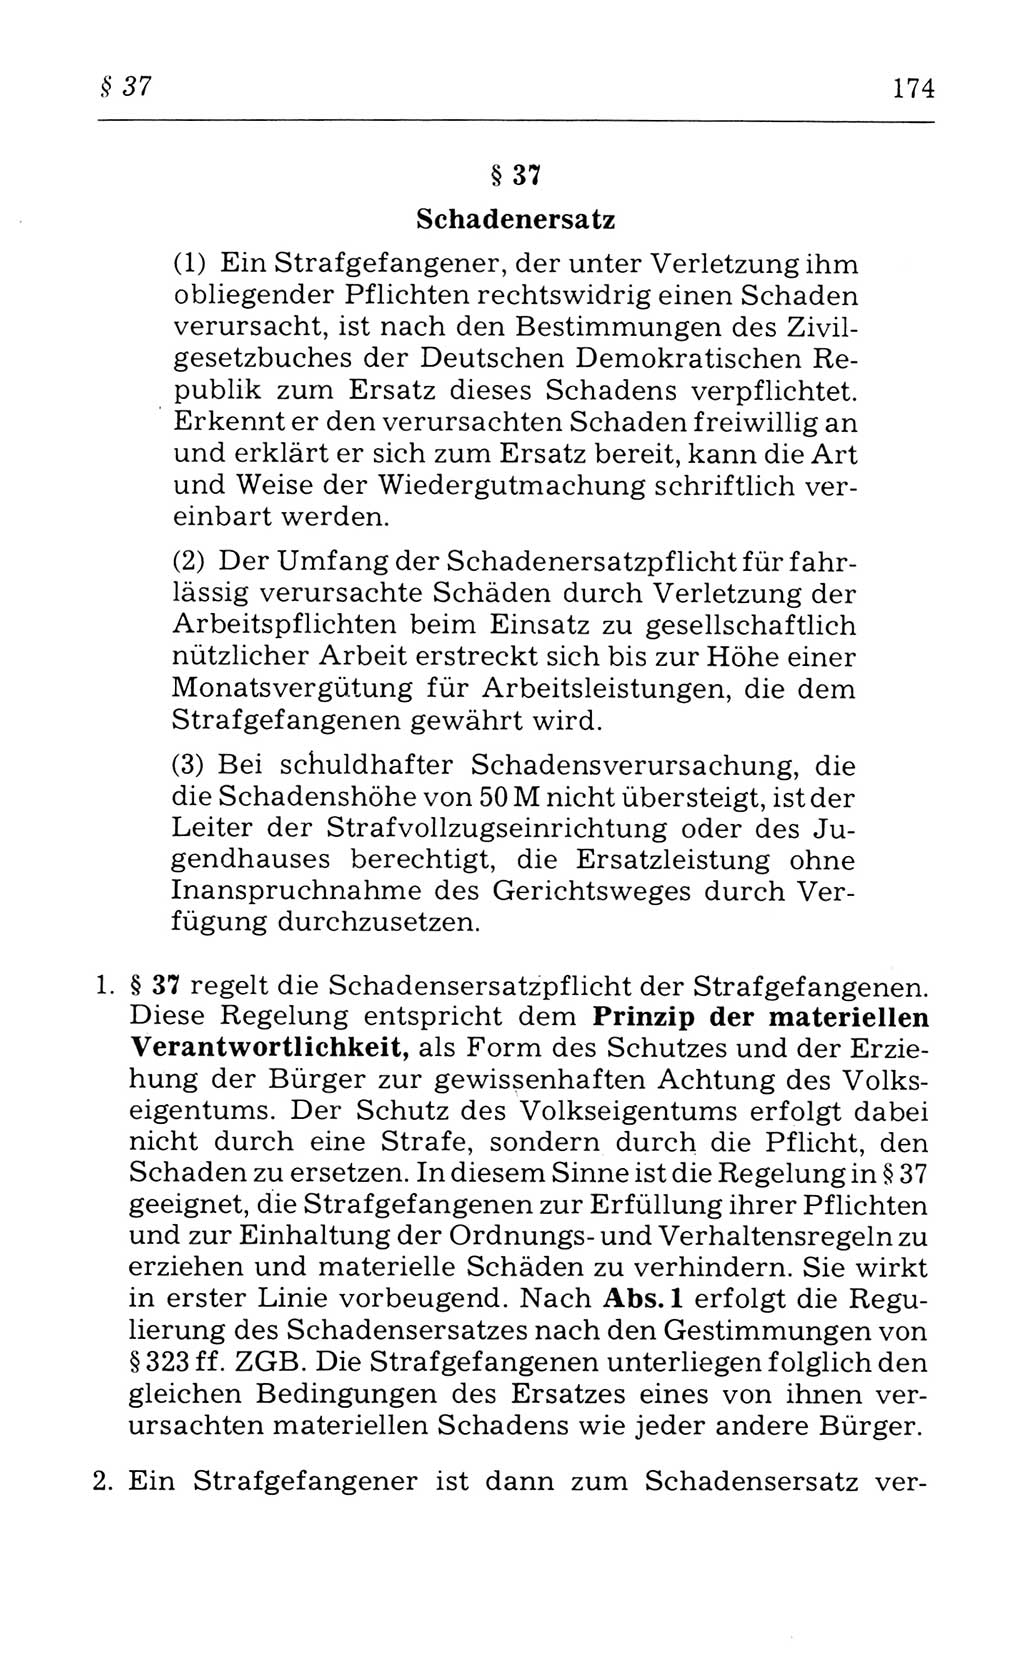 Kommentar zum Strafvollzugsgesetz [(StVG) Deutsche Demokratische Republik (DDR)] 1980, Seite 174 (Komm. StVG DDR 1980, S. 174)